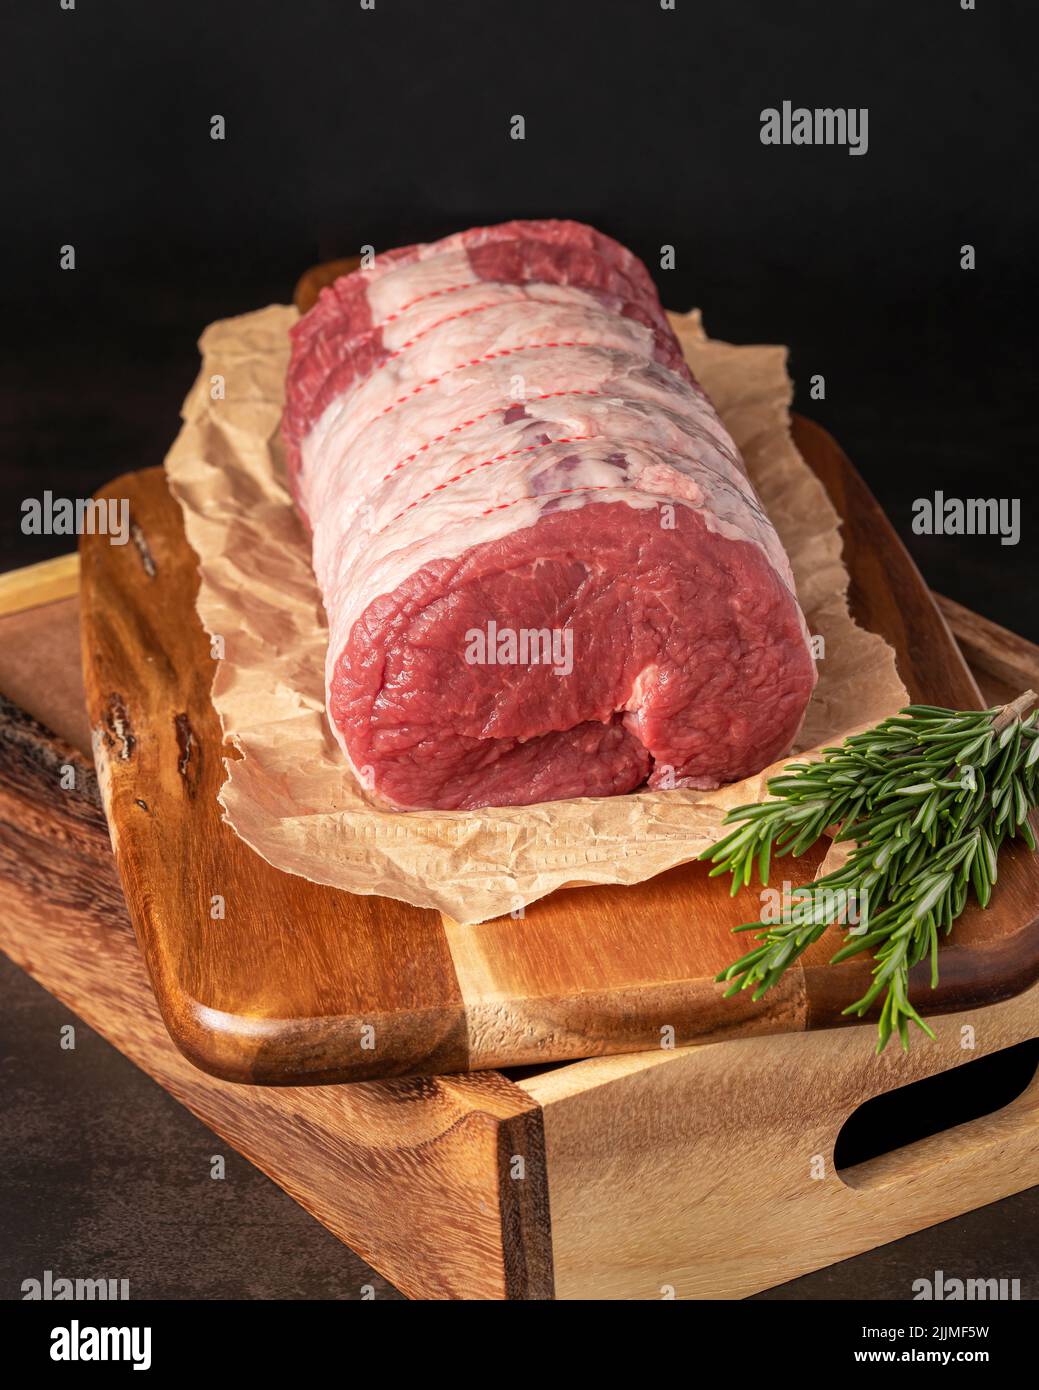 Food Fotografie von Rindfleisch, rohem Steak, Metzger, Filet, Fleisch, Holzbrett, Kräuter Stockfoto